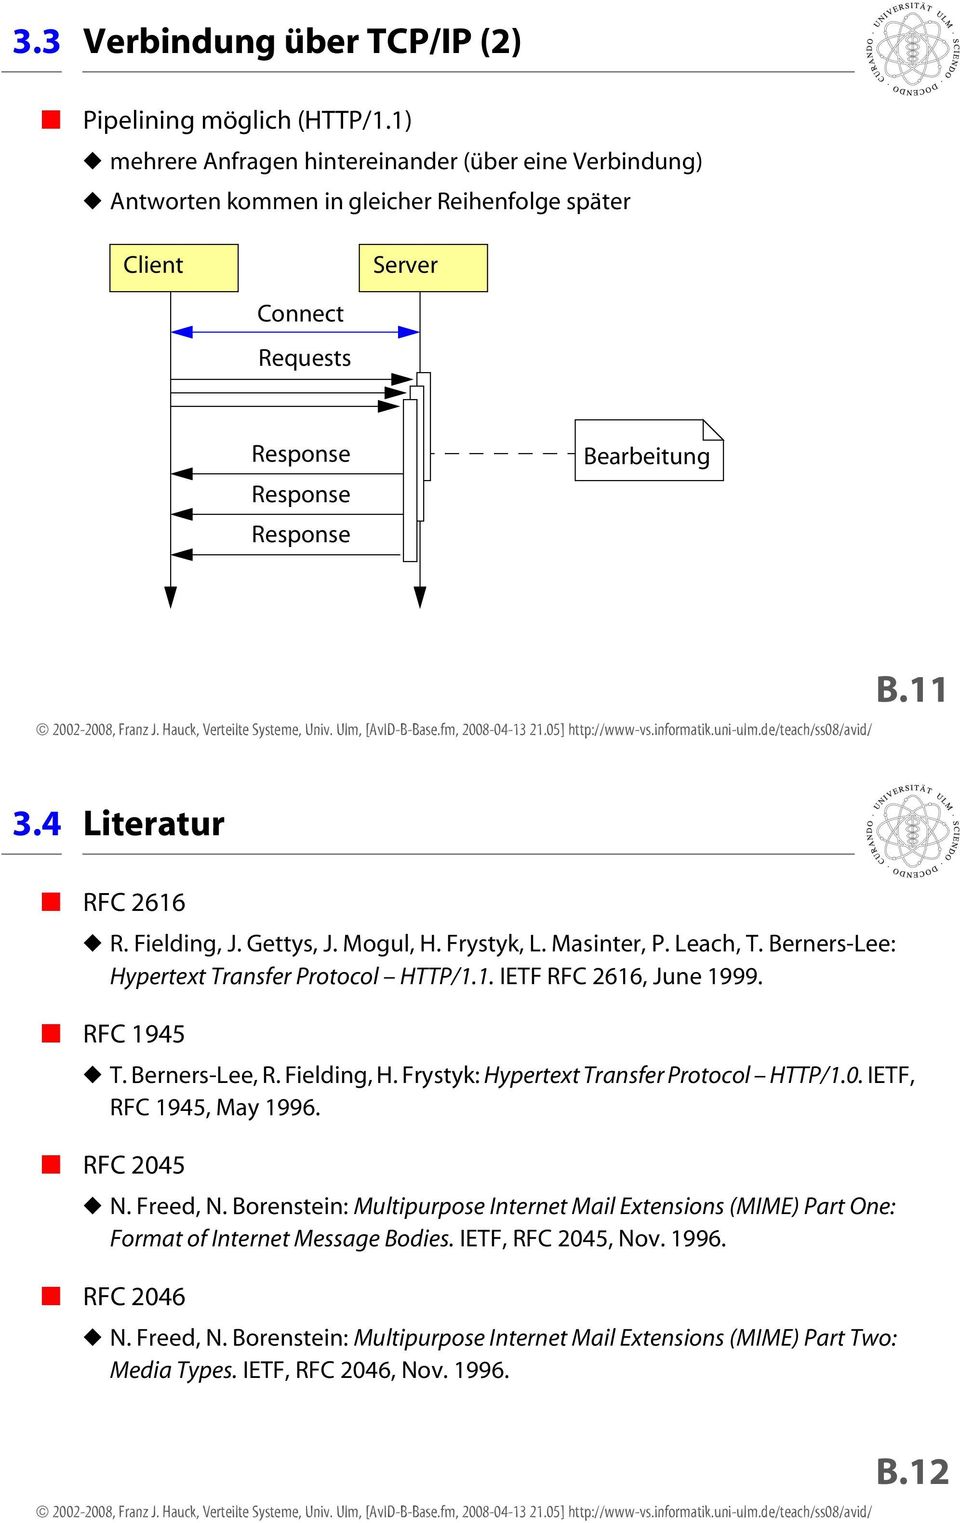 4 Literatur RFC 2616 R. Fielding, J. Gettys, J. Mogul, H. Frystyk, L. Masinter, P. Leach, T. Berners-Lee: Hypertext Transfer Protocol HTTP/1.1. IETF RFC 2616, June 1999. RFC 1945 T. Berners-Lee, R.